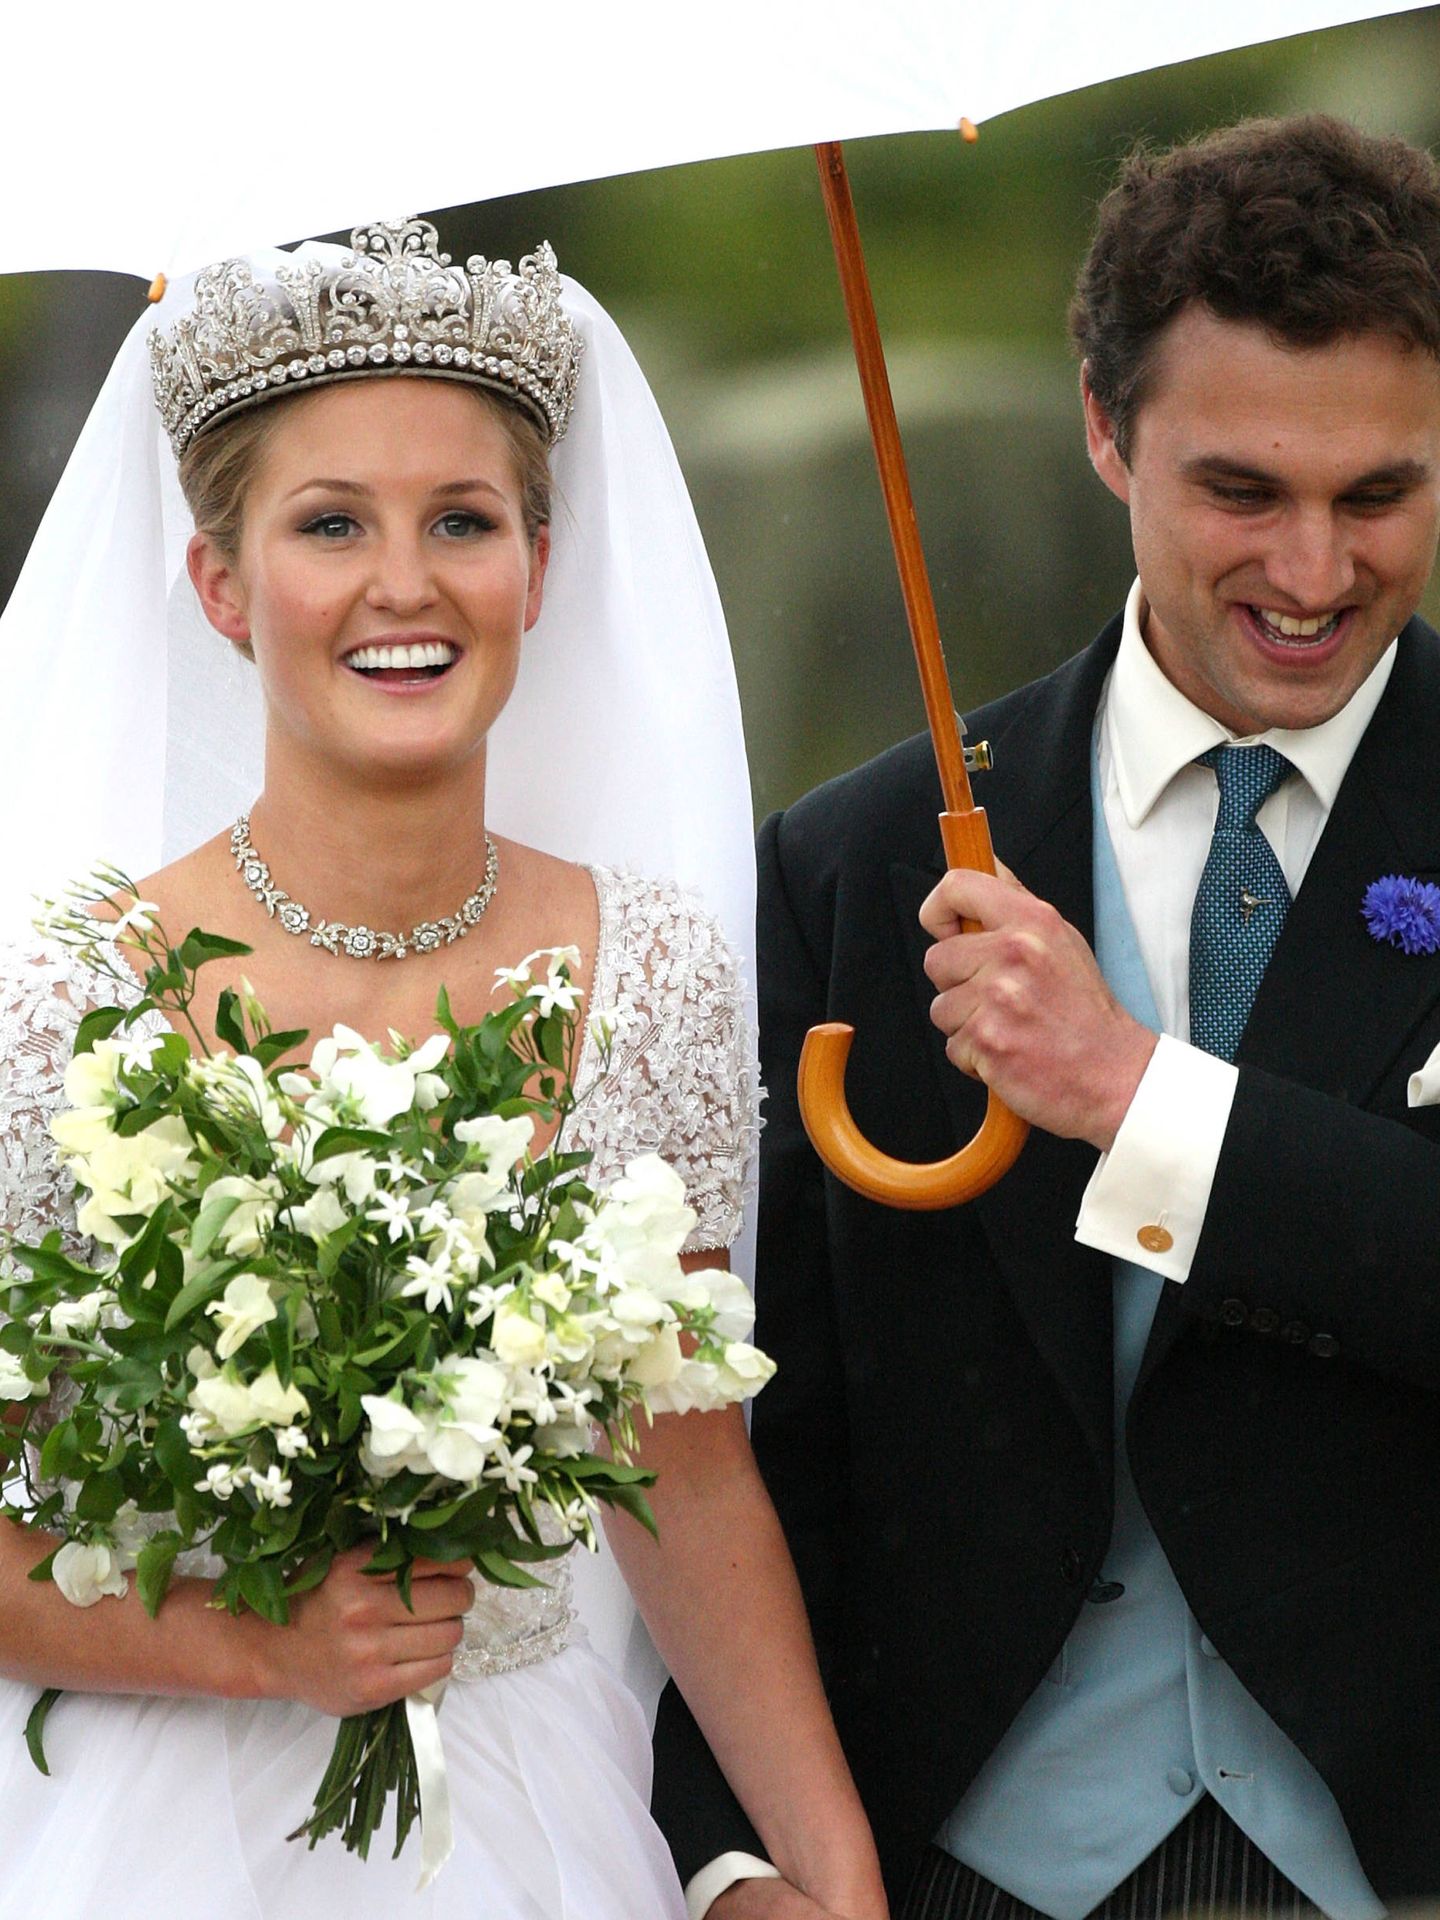 La boda de Melissa Percy y Thomas Van Straubenzee en 2013. (Getty)